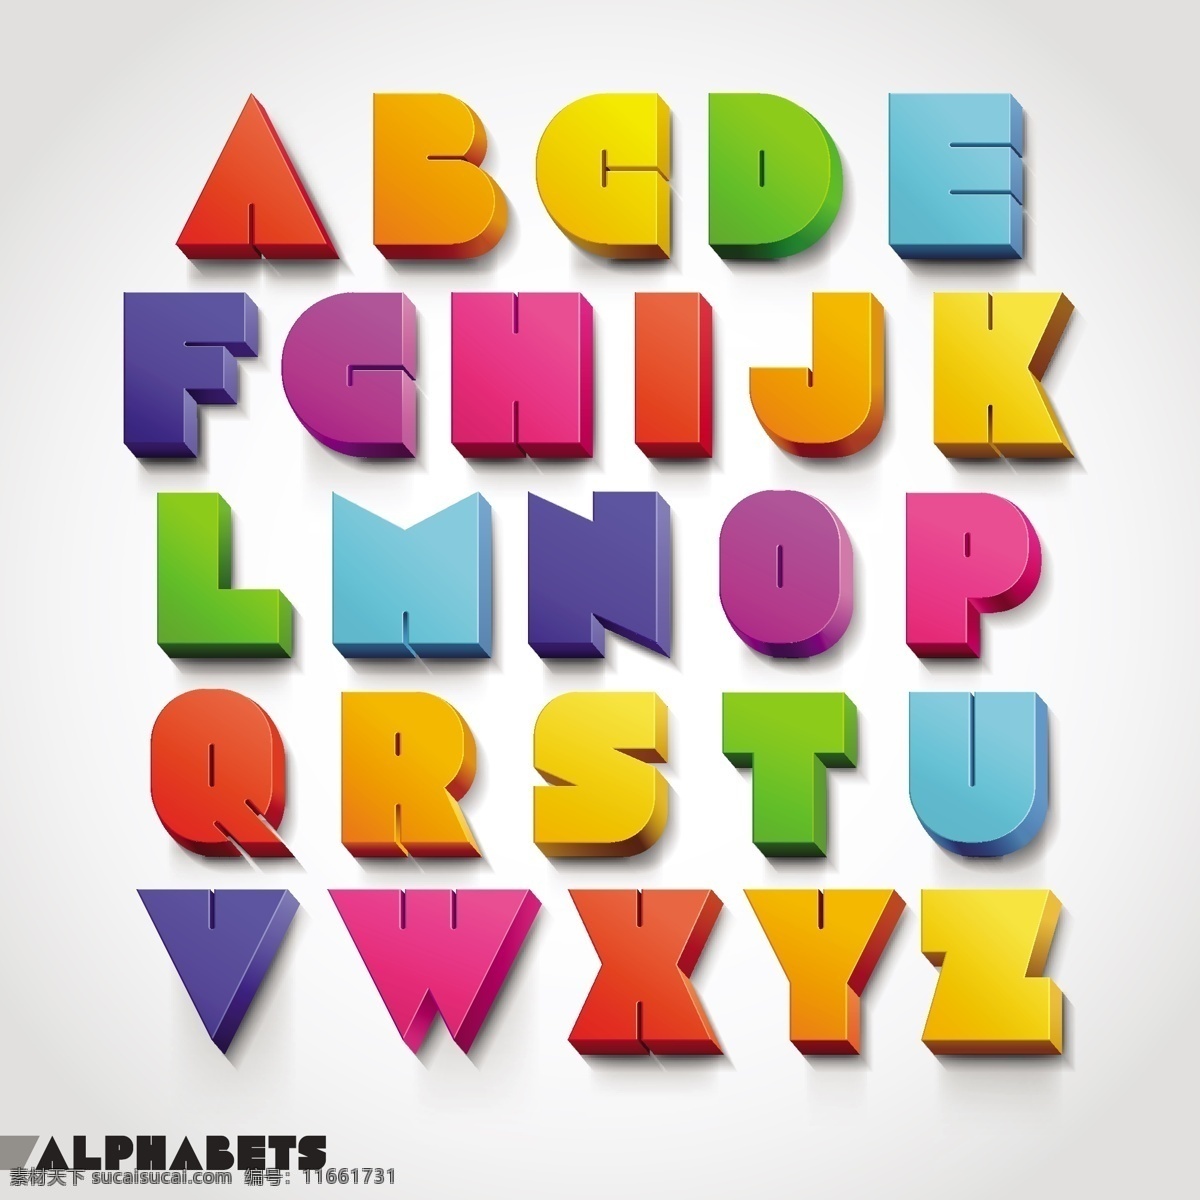 矢量 时尚 装饰 字母 字母设计 模板下载 3d立体字母 数字主题 矢量图 艺术字